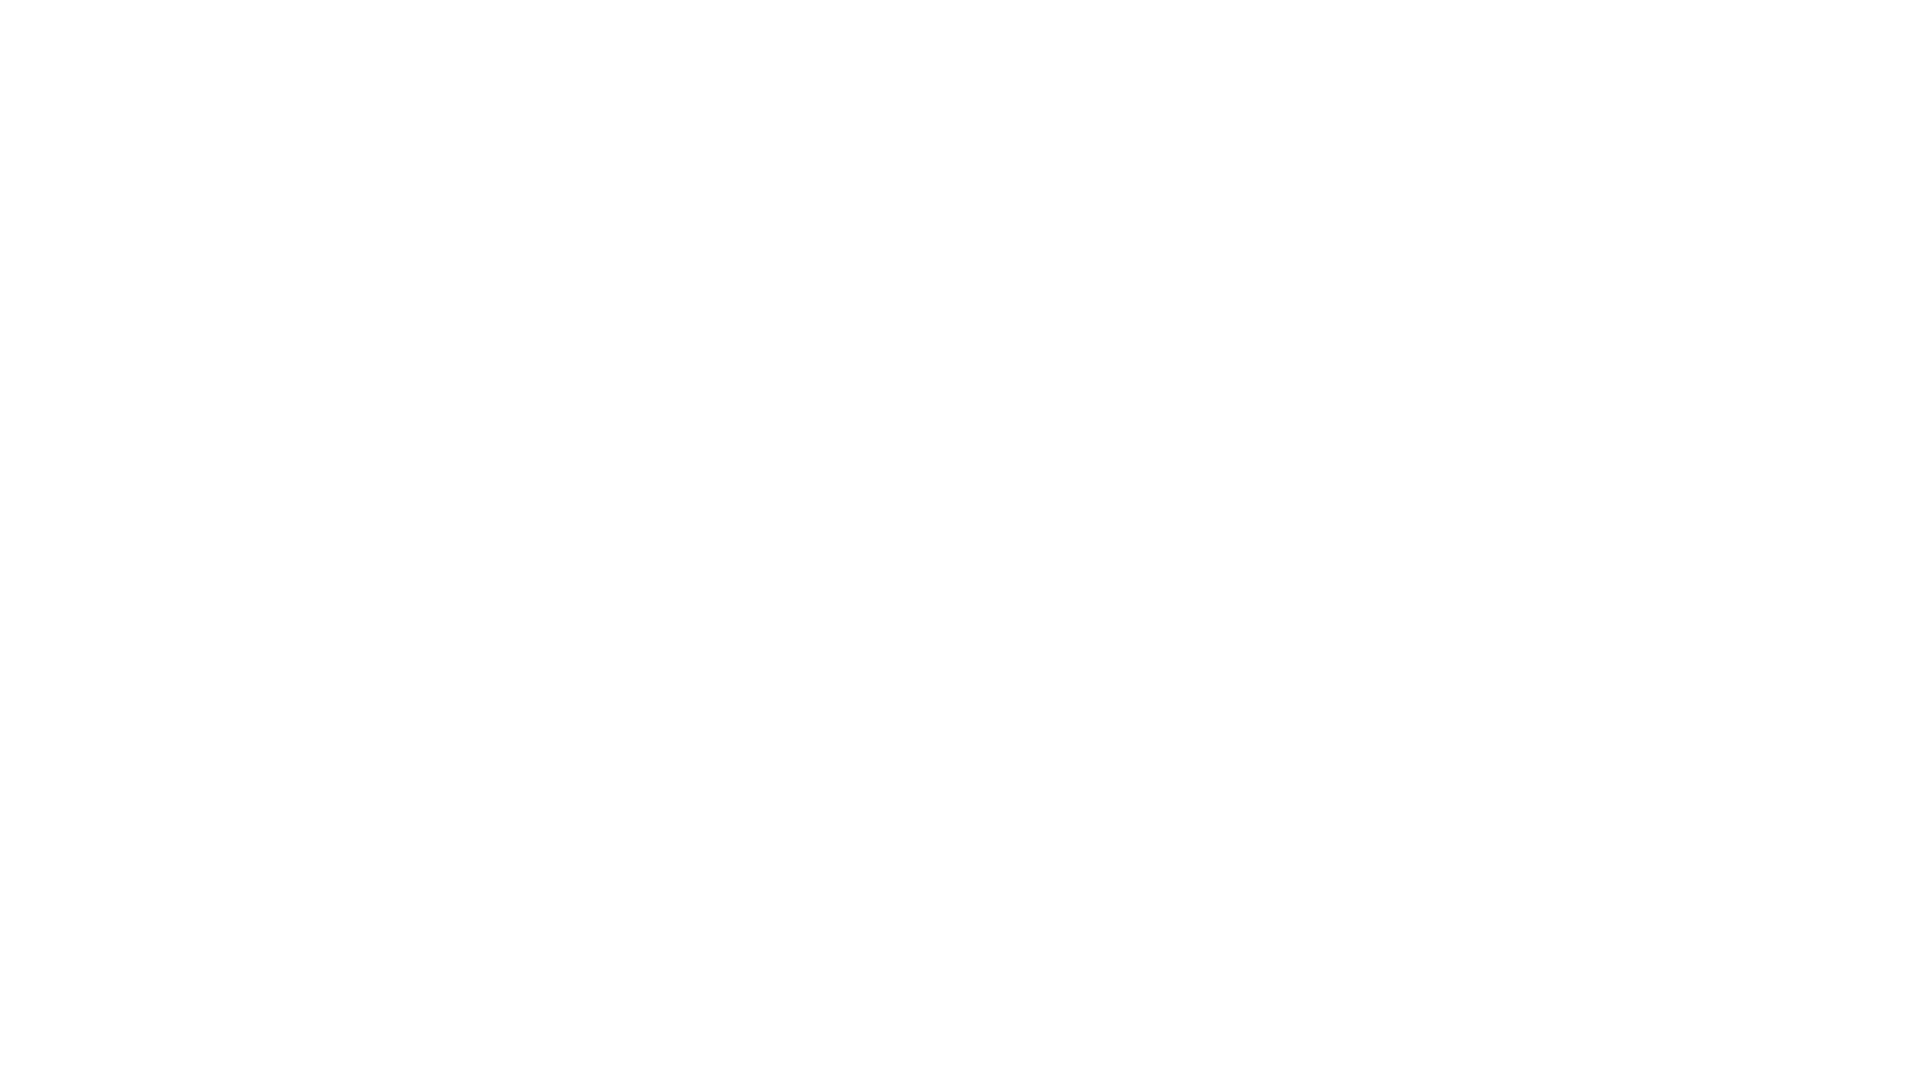 David goodman logo hero white-01